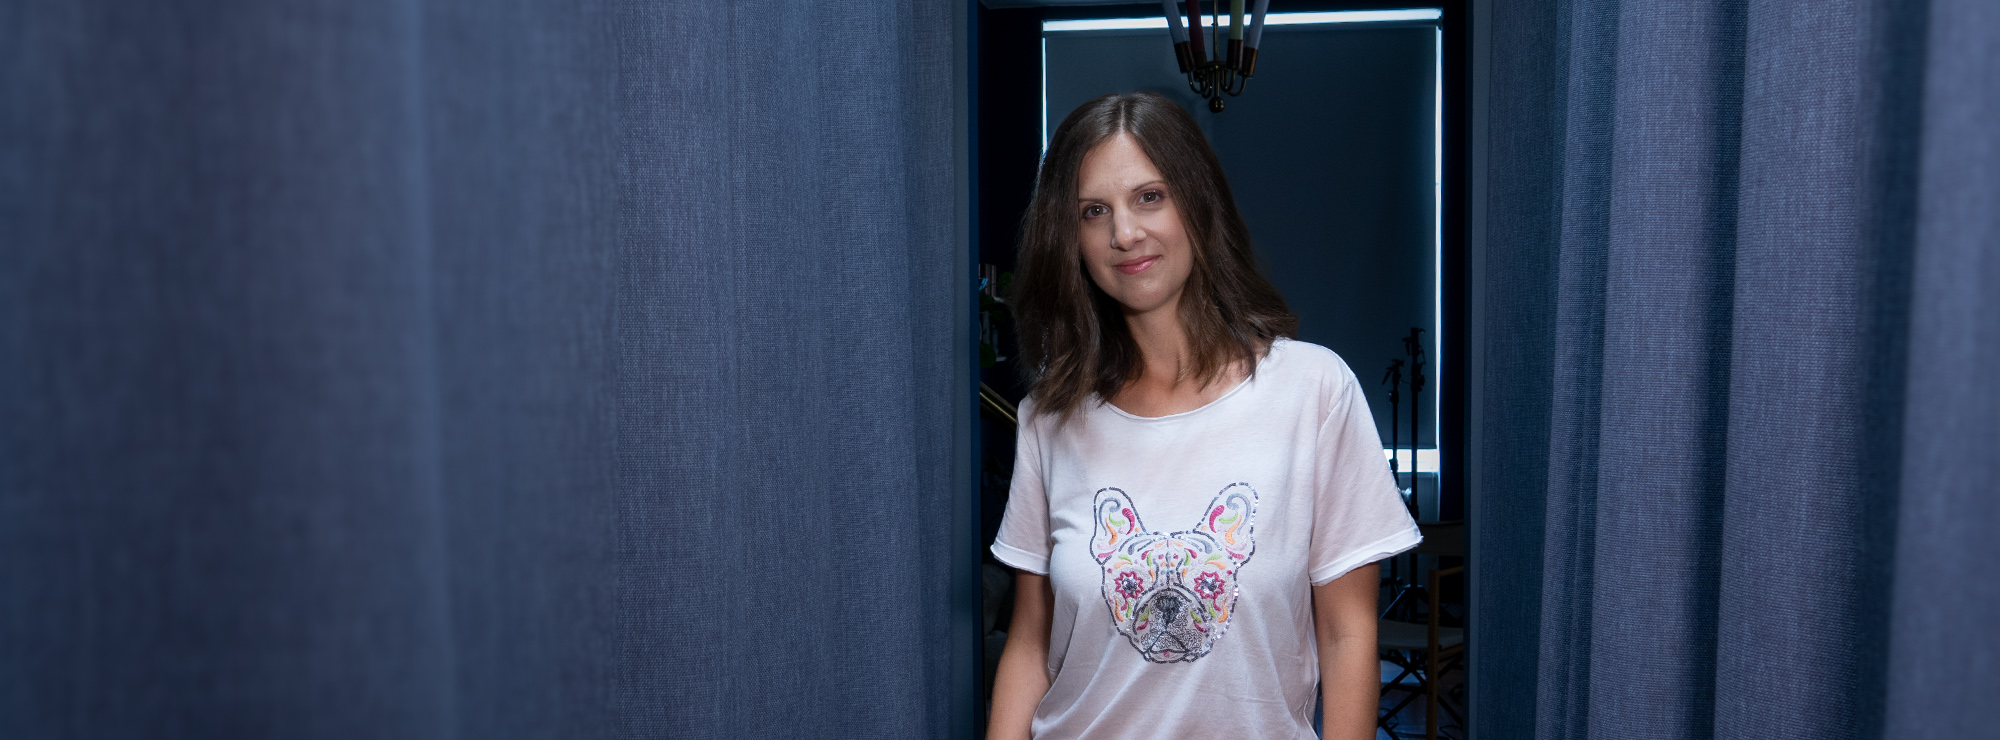 Janina Seifert steht im Ankleidezimmer mit einem weißen T-Shirt mit Hunde-Applikation und lächelt in die Kamera